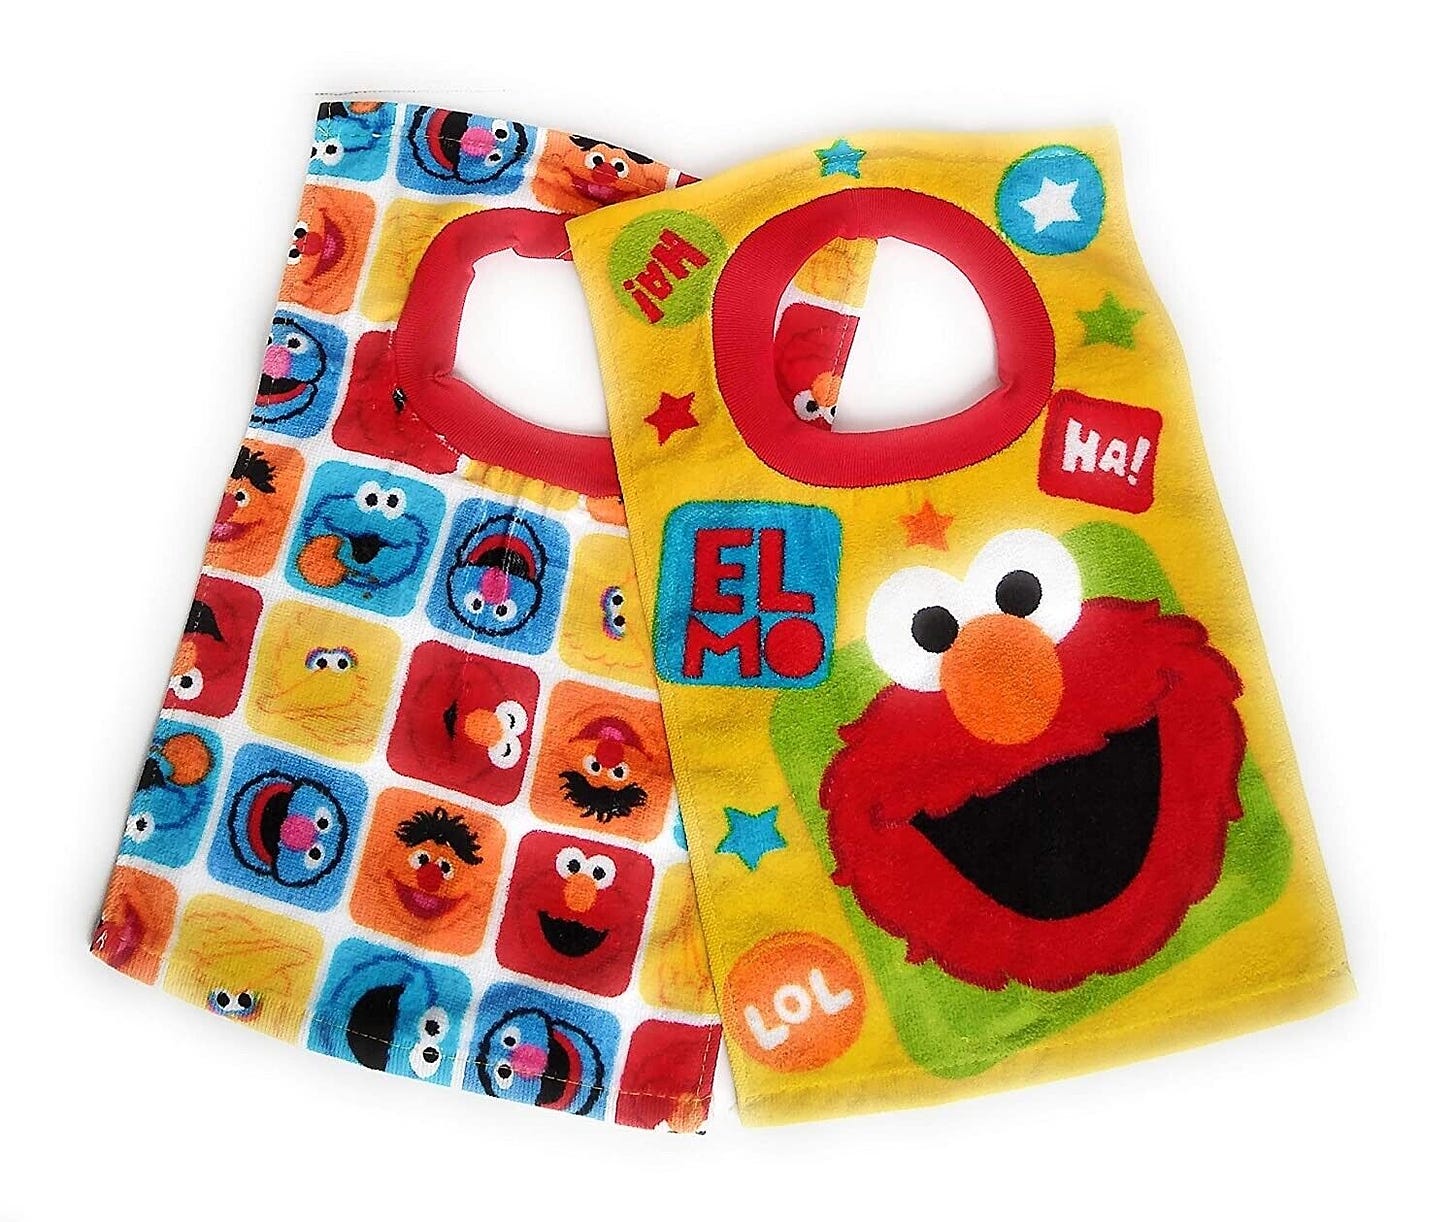 Sesame Street: Elmo and Friends Towel Bibs Pack of 2 14681019855 | eBay